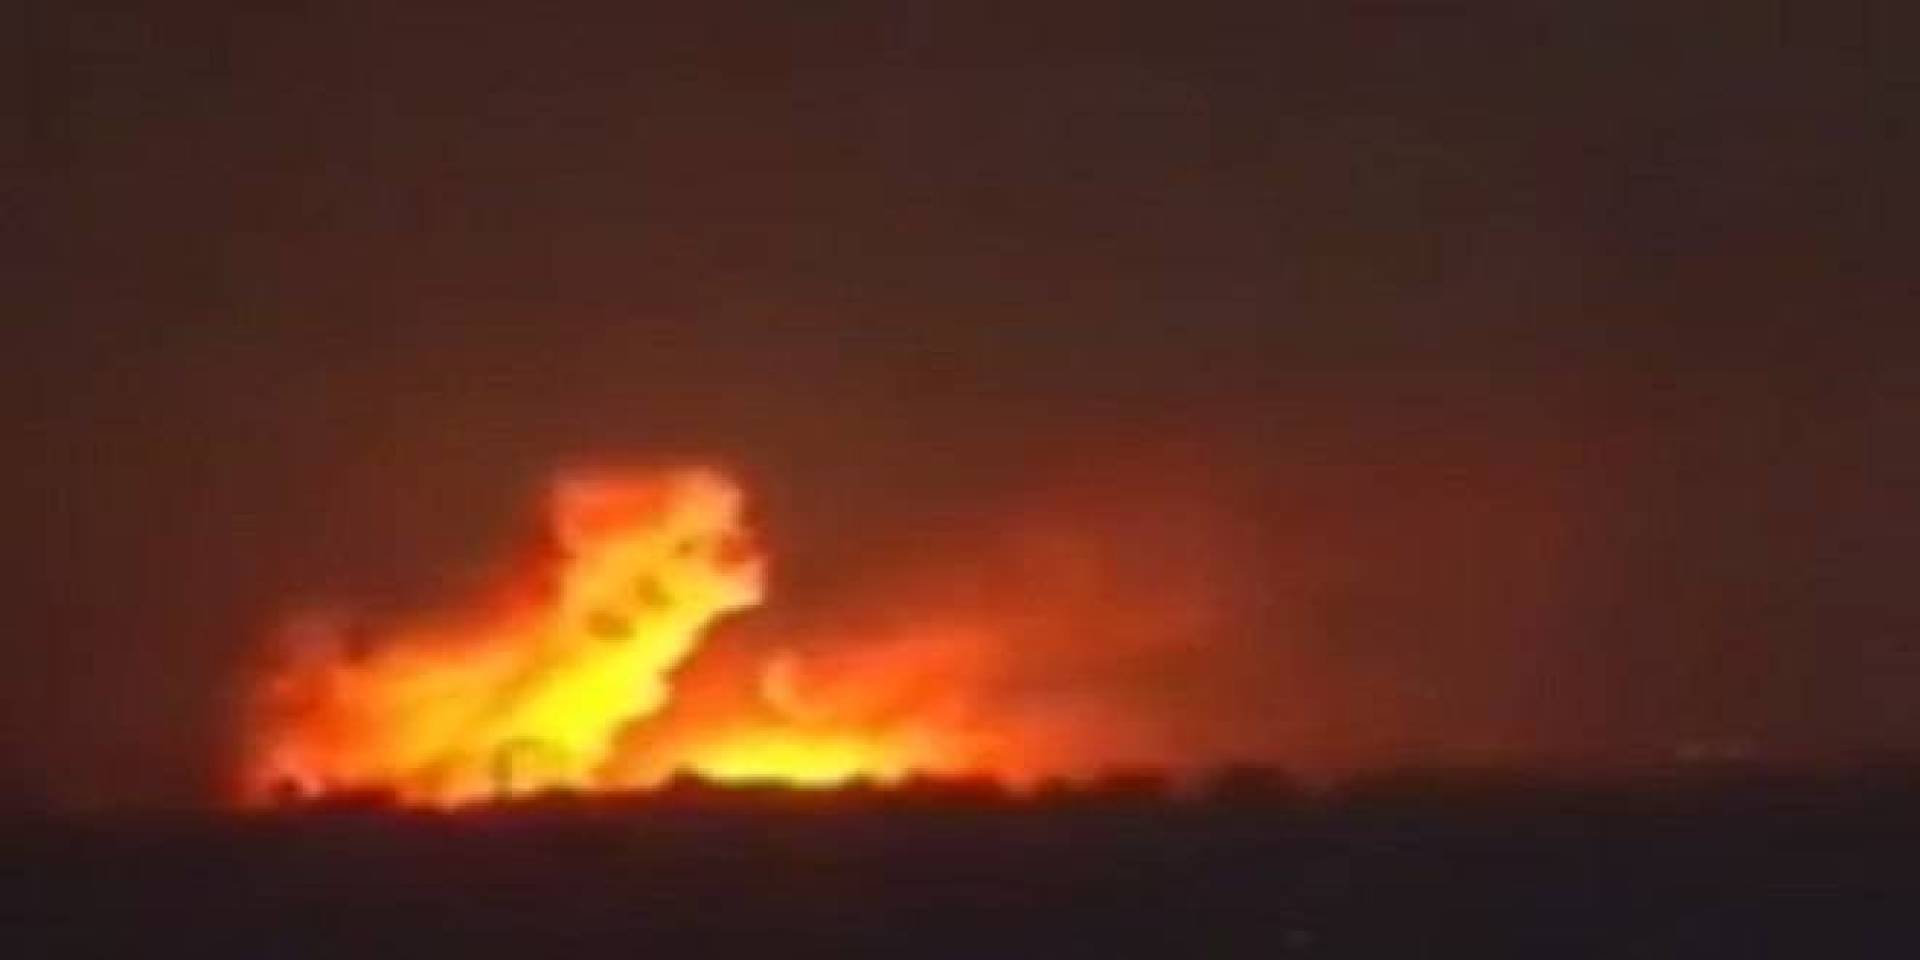 هجوم صاروخي عنيف يستهدف قاعدة للاحتلال الأمريكي في حقل العمر النفطي وخط الغاز الواصل إلى حقل كونيكو بريف ديرالزور